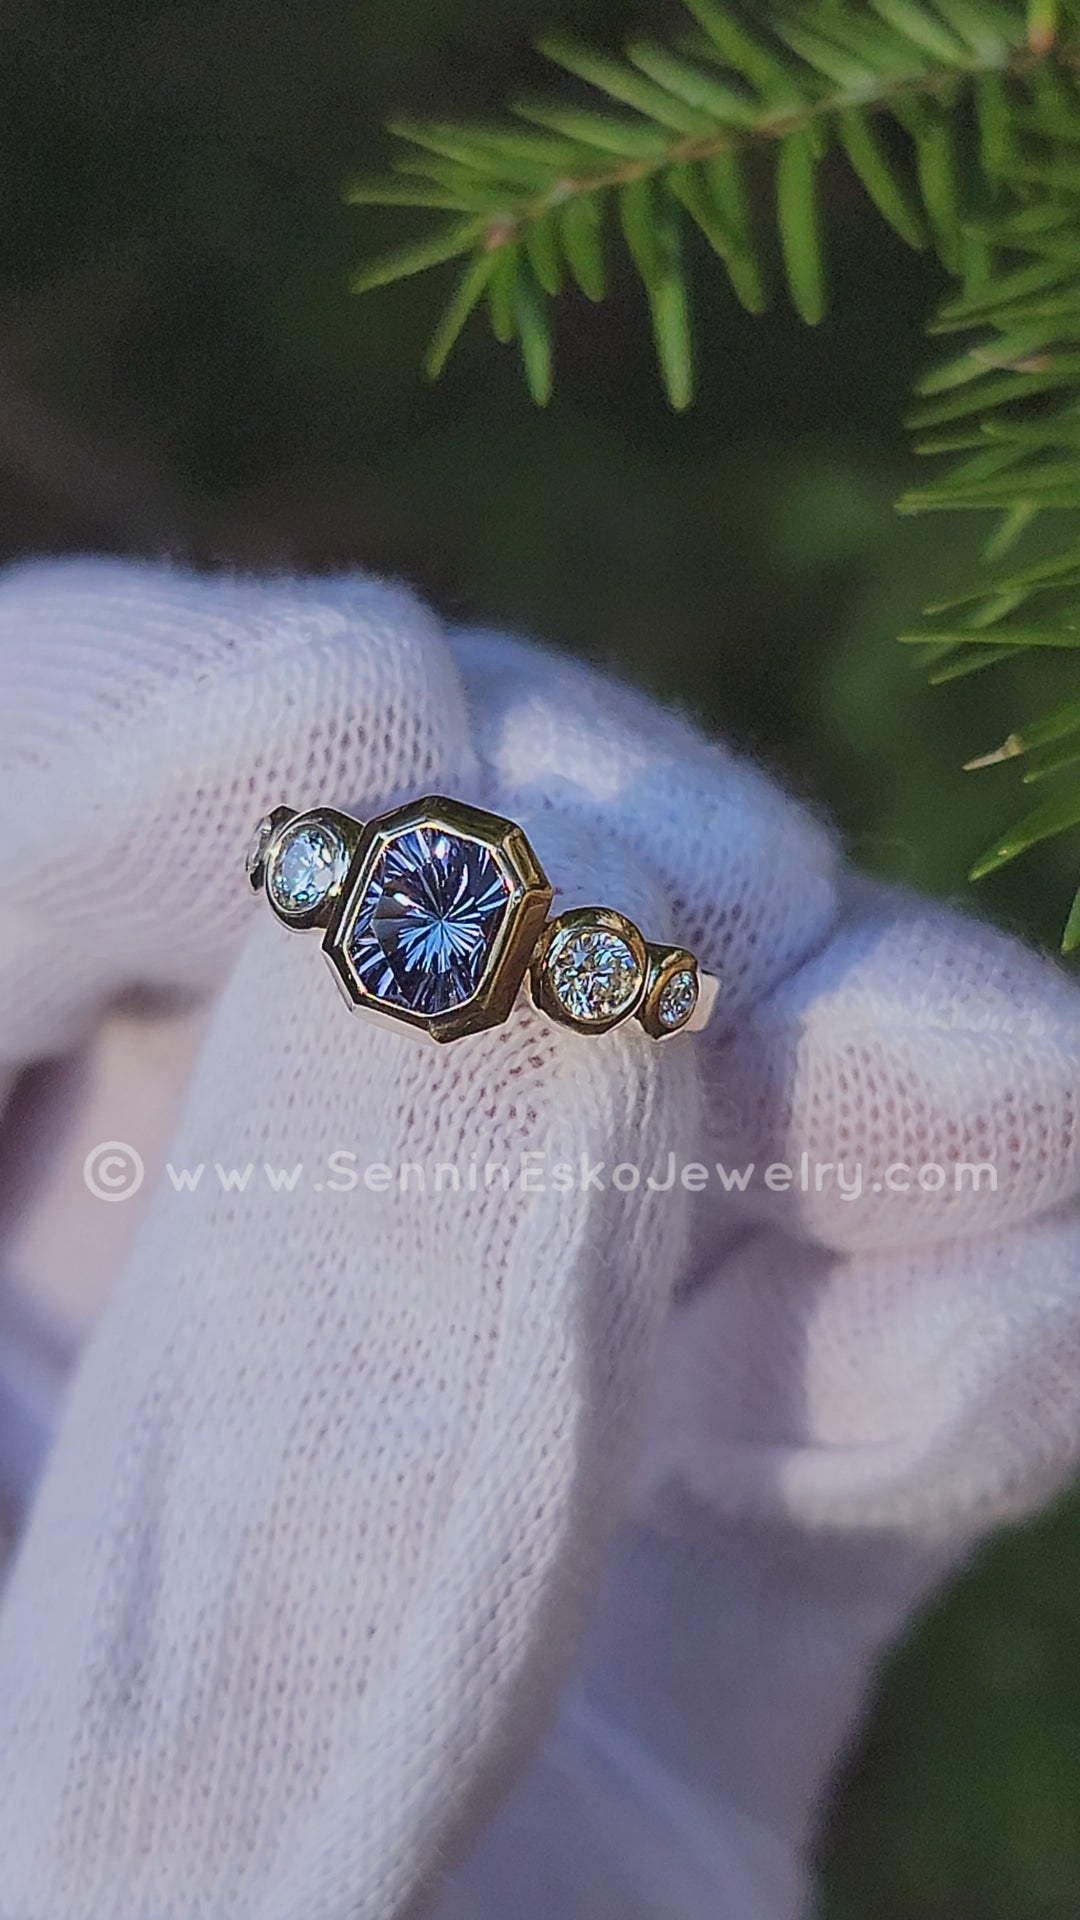 Sertissage multi-lunette accentué de diamants à cinq pierres - Représenté avec un octogone de tanzanite taillé fantaisie (serti uniquement, pierre centrale vendue séparément)